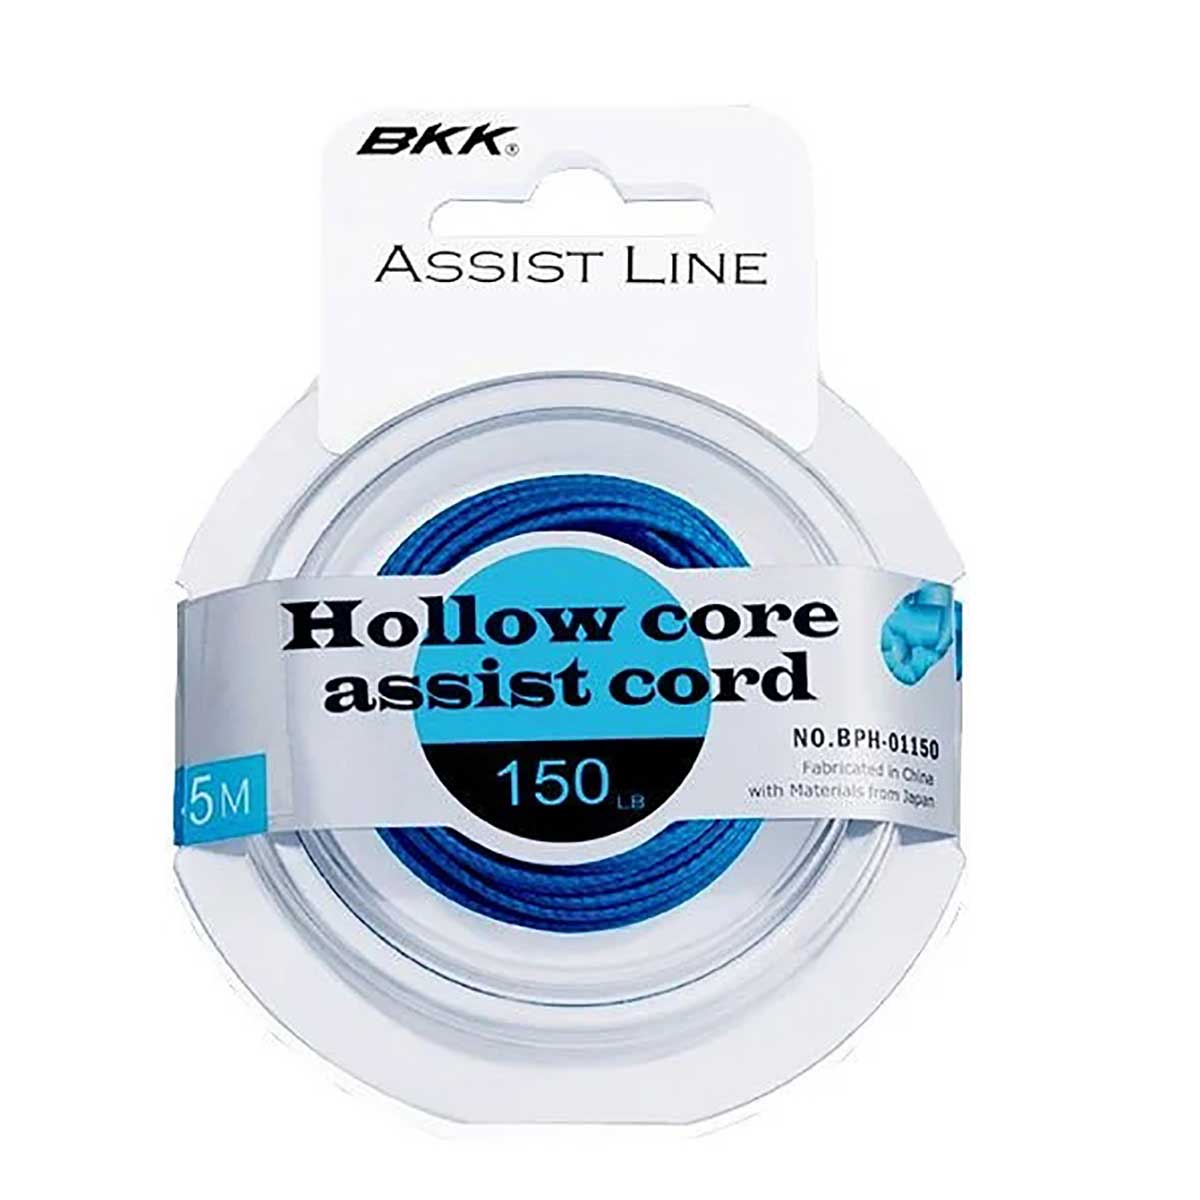 BKK Hollow Core Assist Cord Asist İpi,bkk kalitesinde asist iğnesi bağlamak için kullanılan örgü kordon